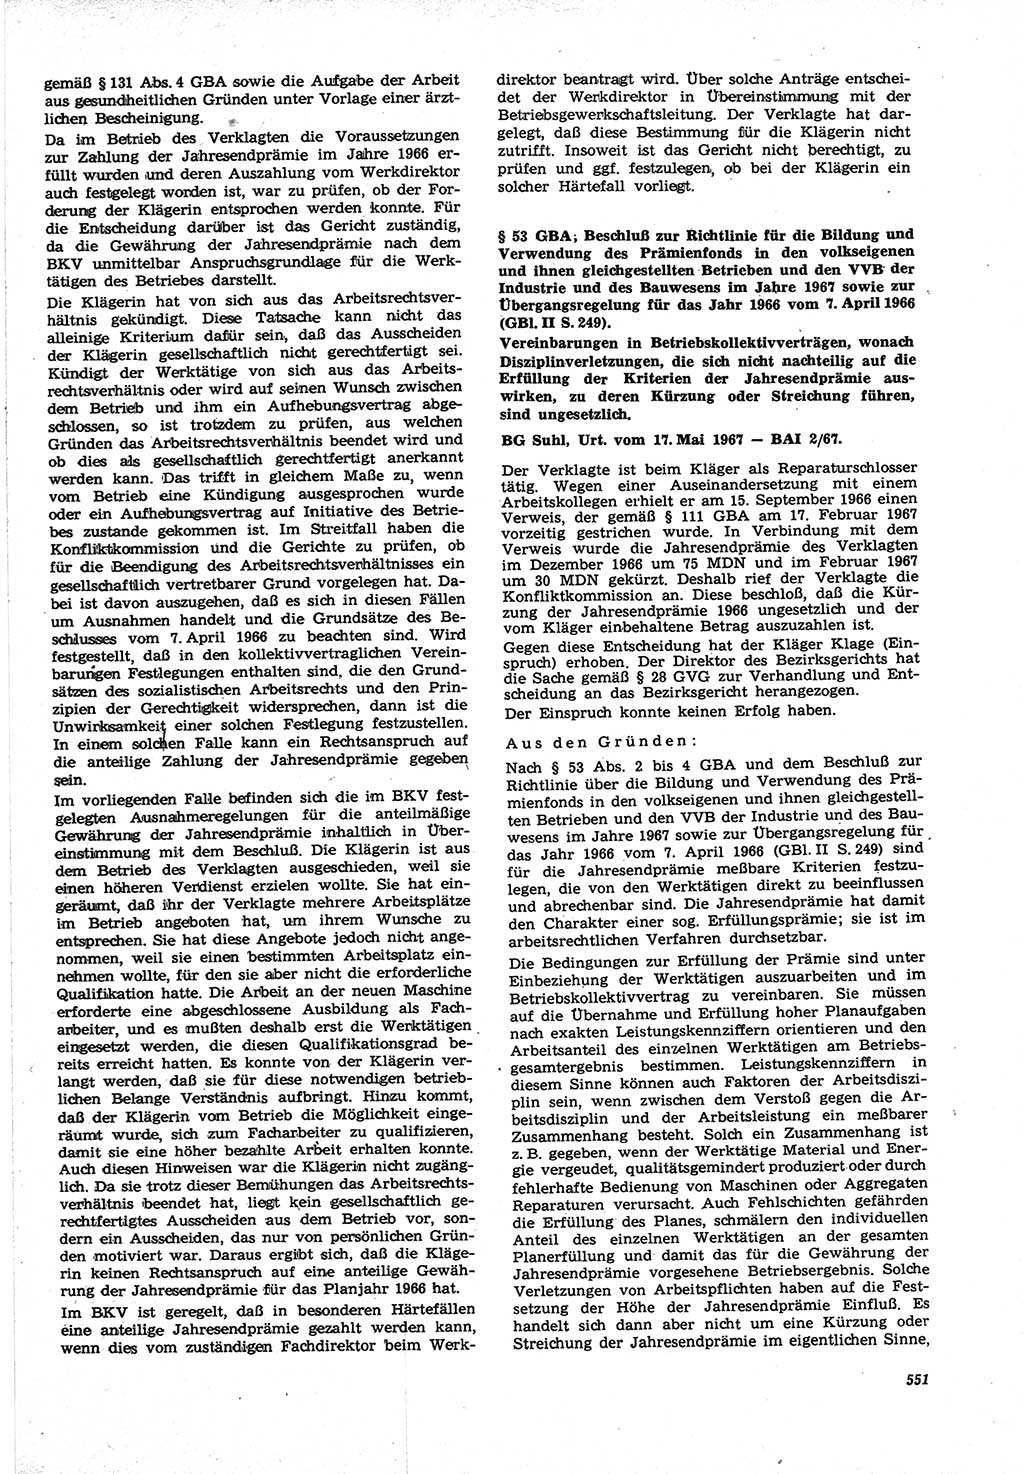 Neue Justiz (NJ), Zeitschrift für Recht und Rechtswissenschaft [Deutsche Demokratische Republik (DDR)], 21. Jahrgang 1967, Seite 551 (NJ DDR 1967, S. 551)